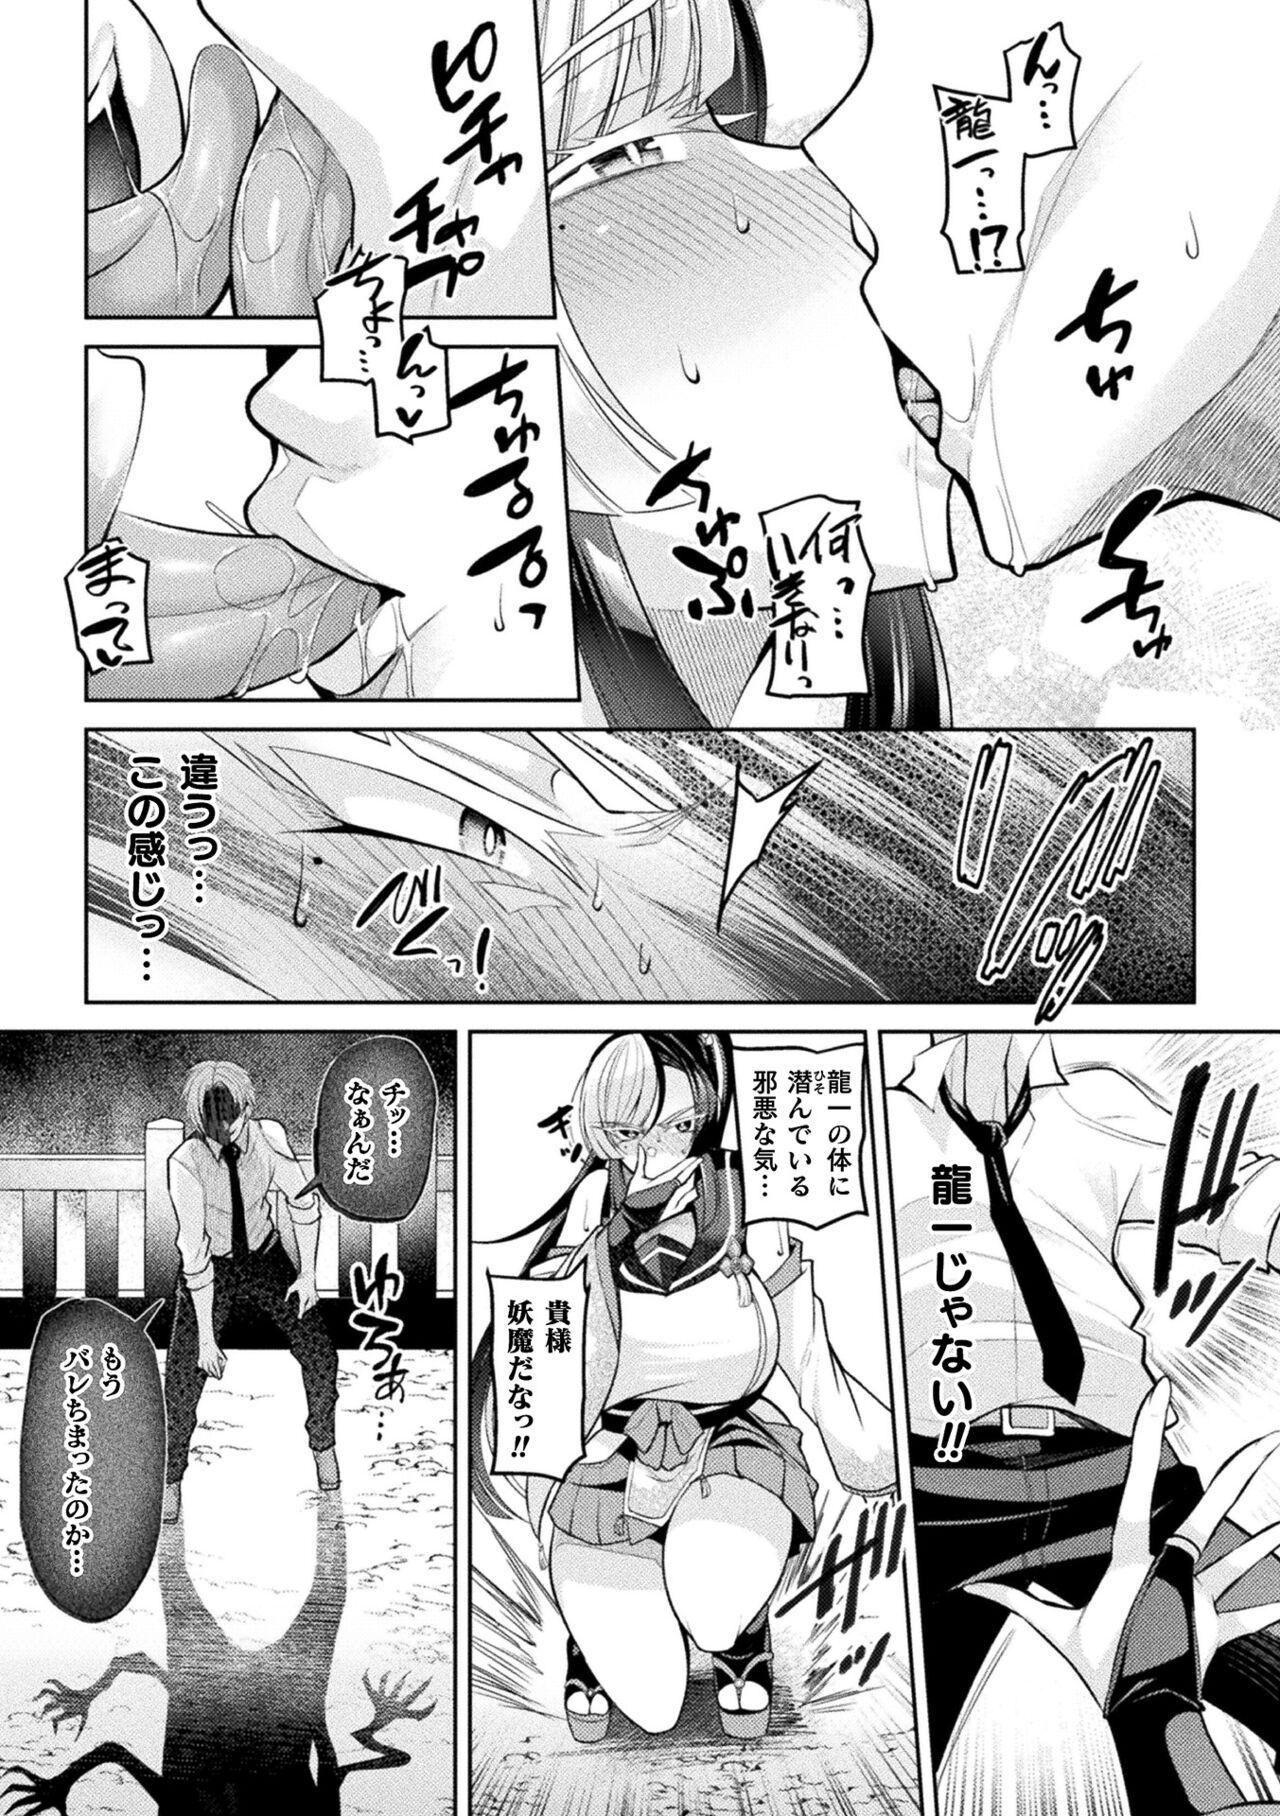 Corrida 2D Comic Magazine Akuochi Haramase Seigi no Bishoujo Akuten Jutai Vol. 2 Nudity - Page 7